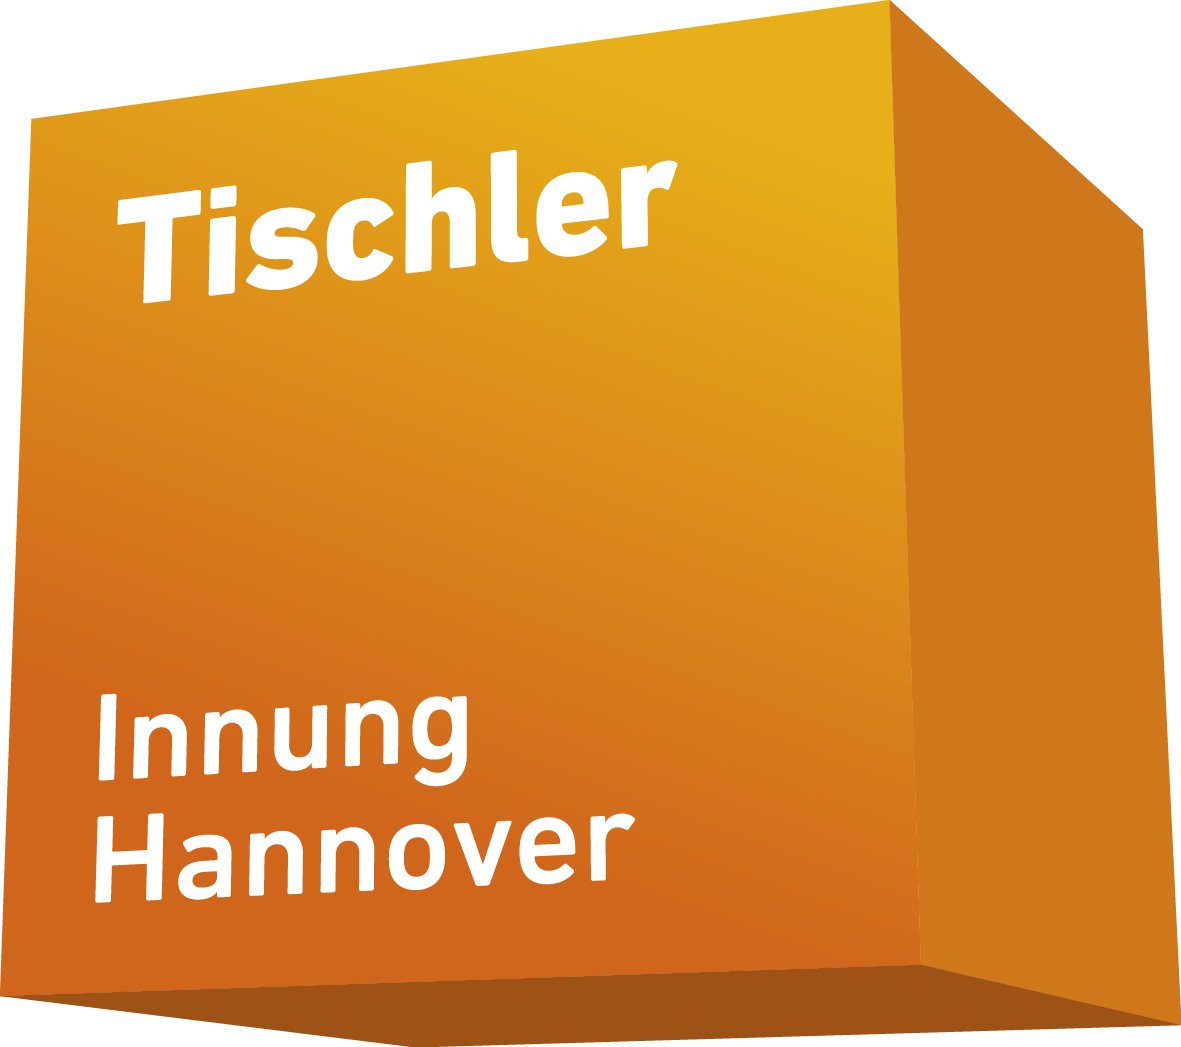 Tischler Innung Hannover - Gute Form - Werkart Hannover - Möbel